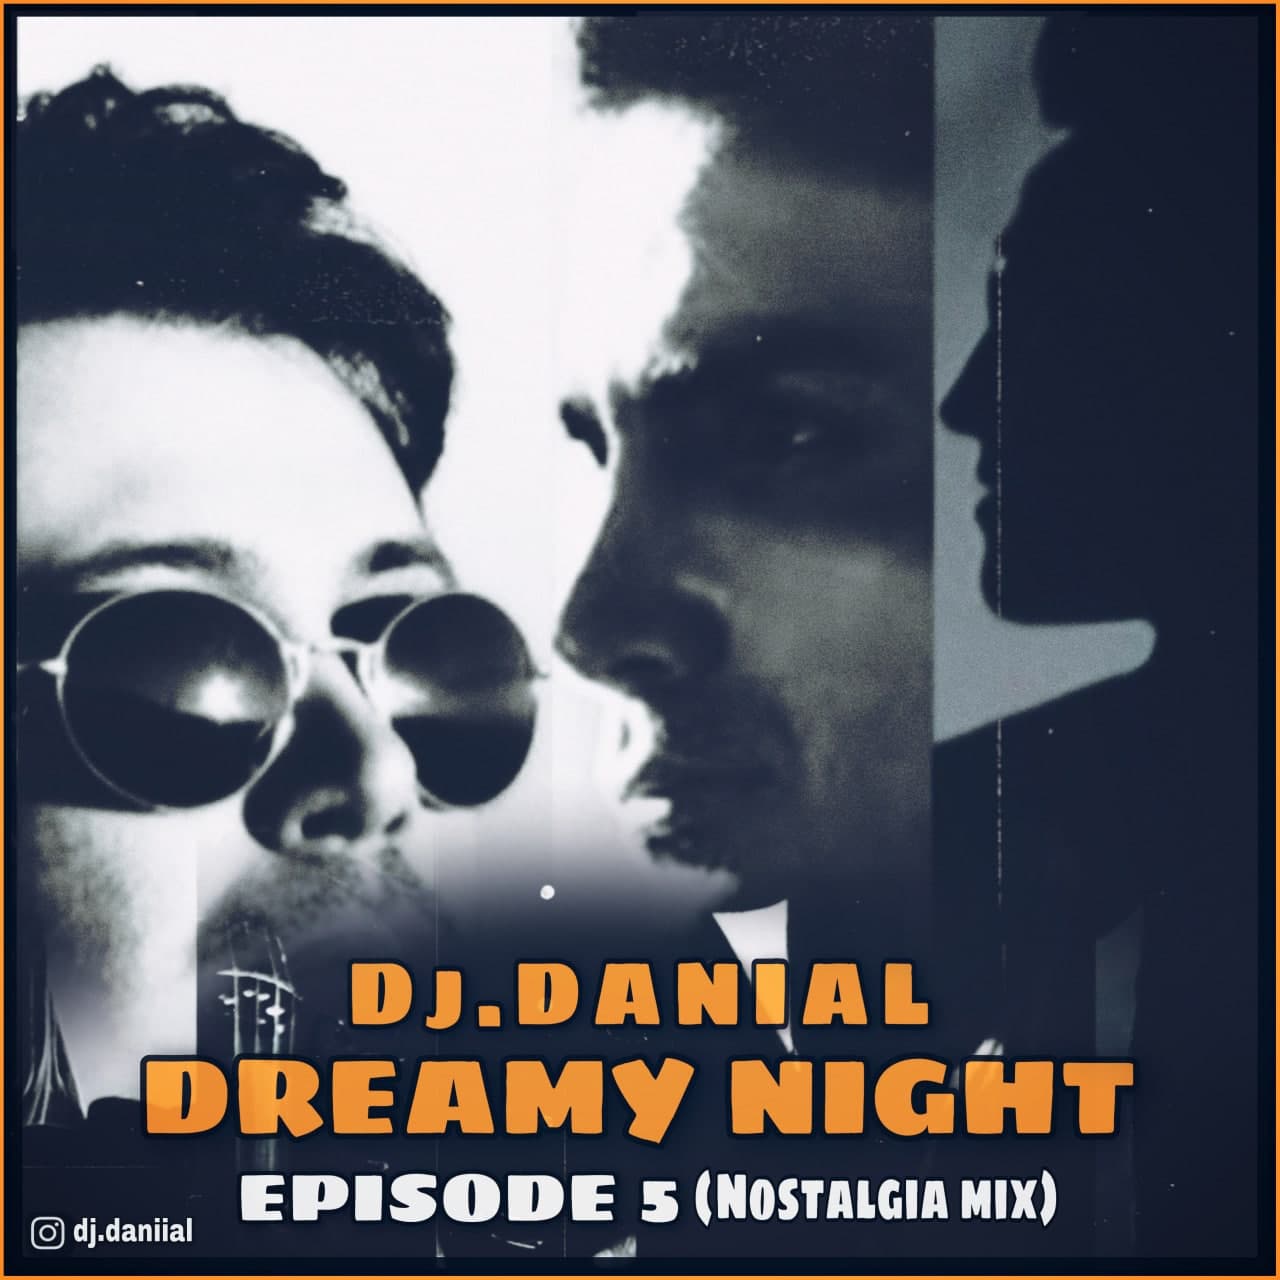 DJ Danial – Dreamy Night 05